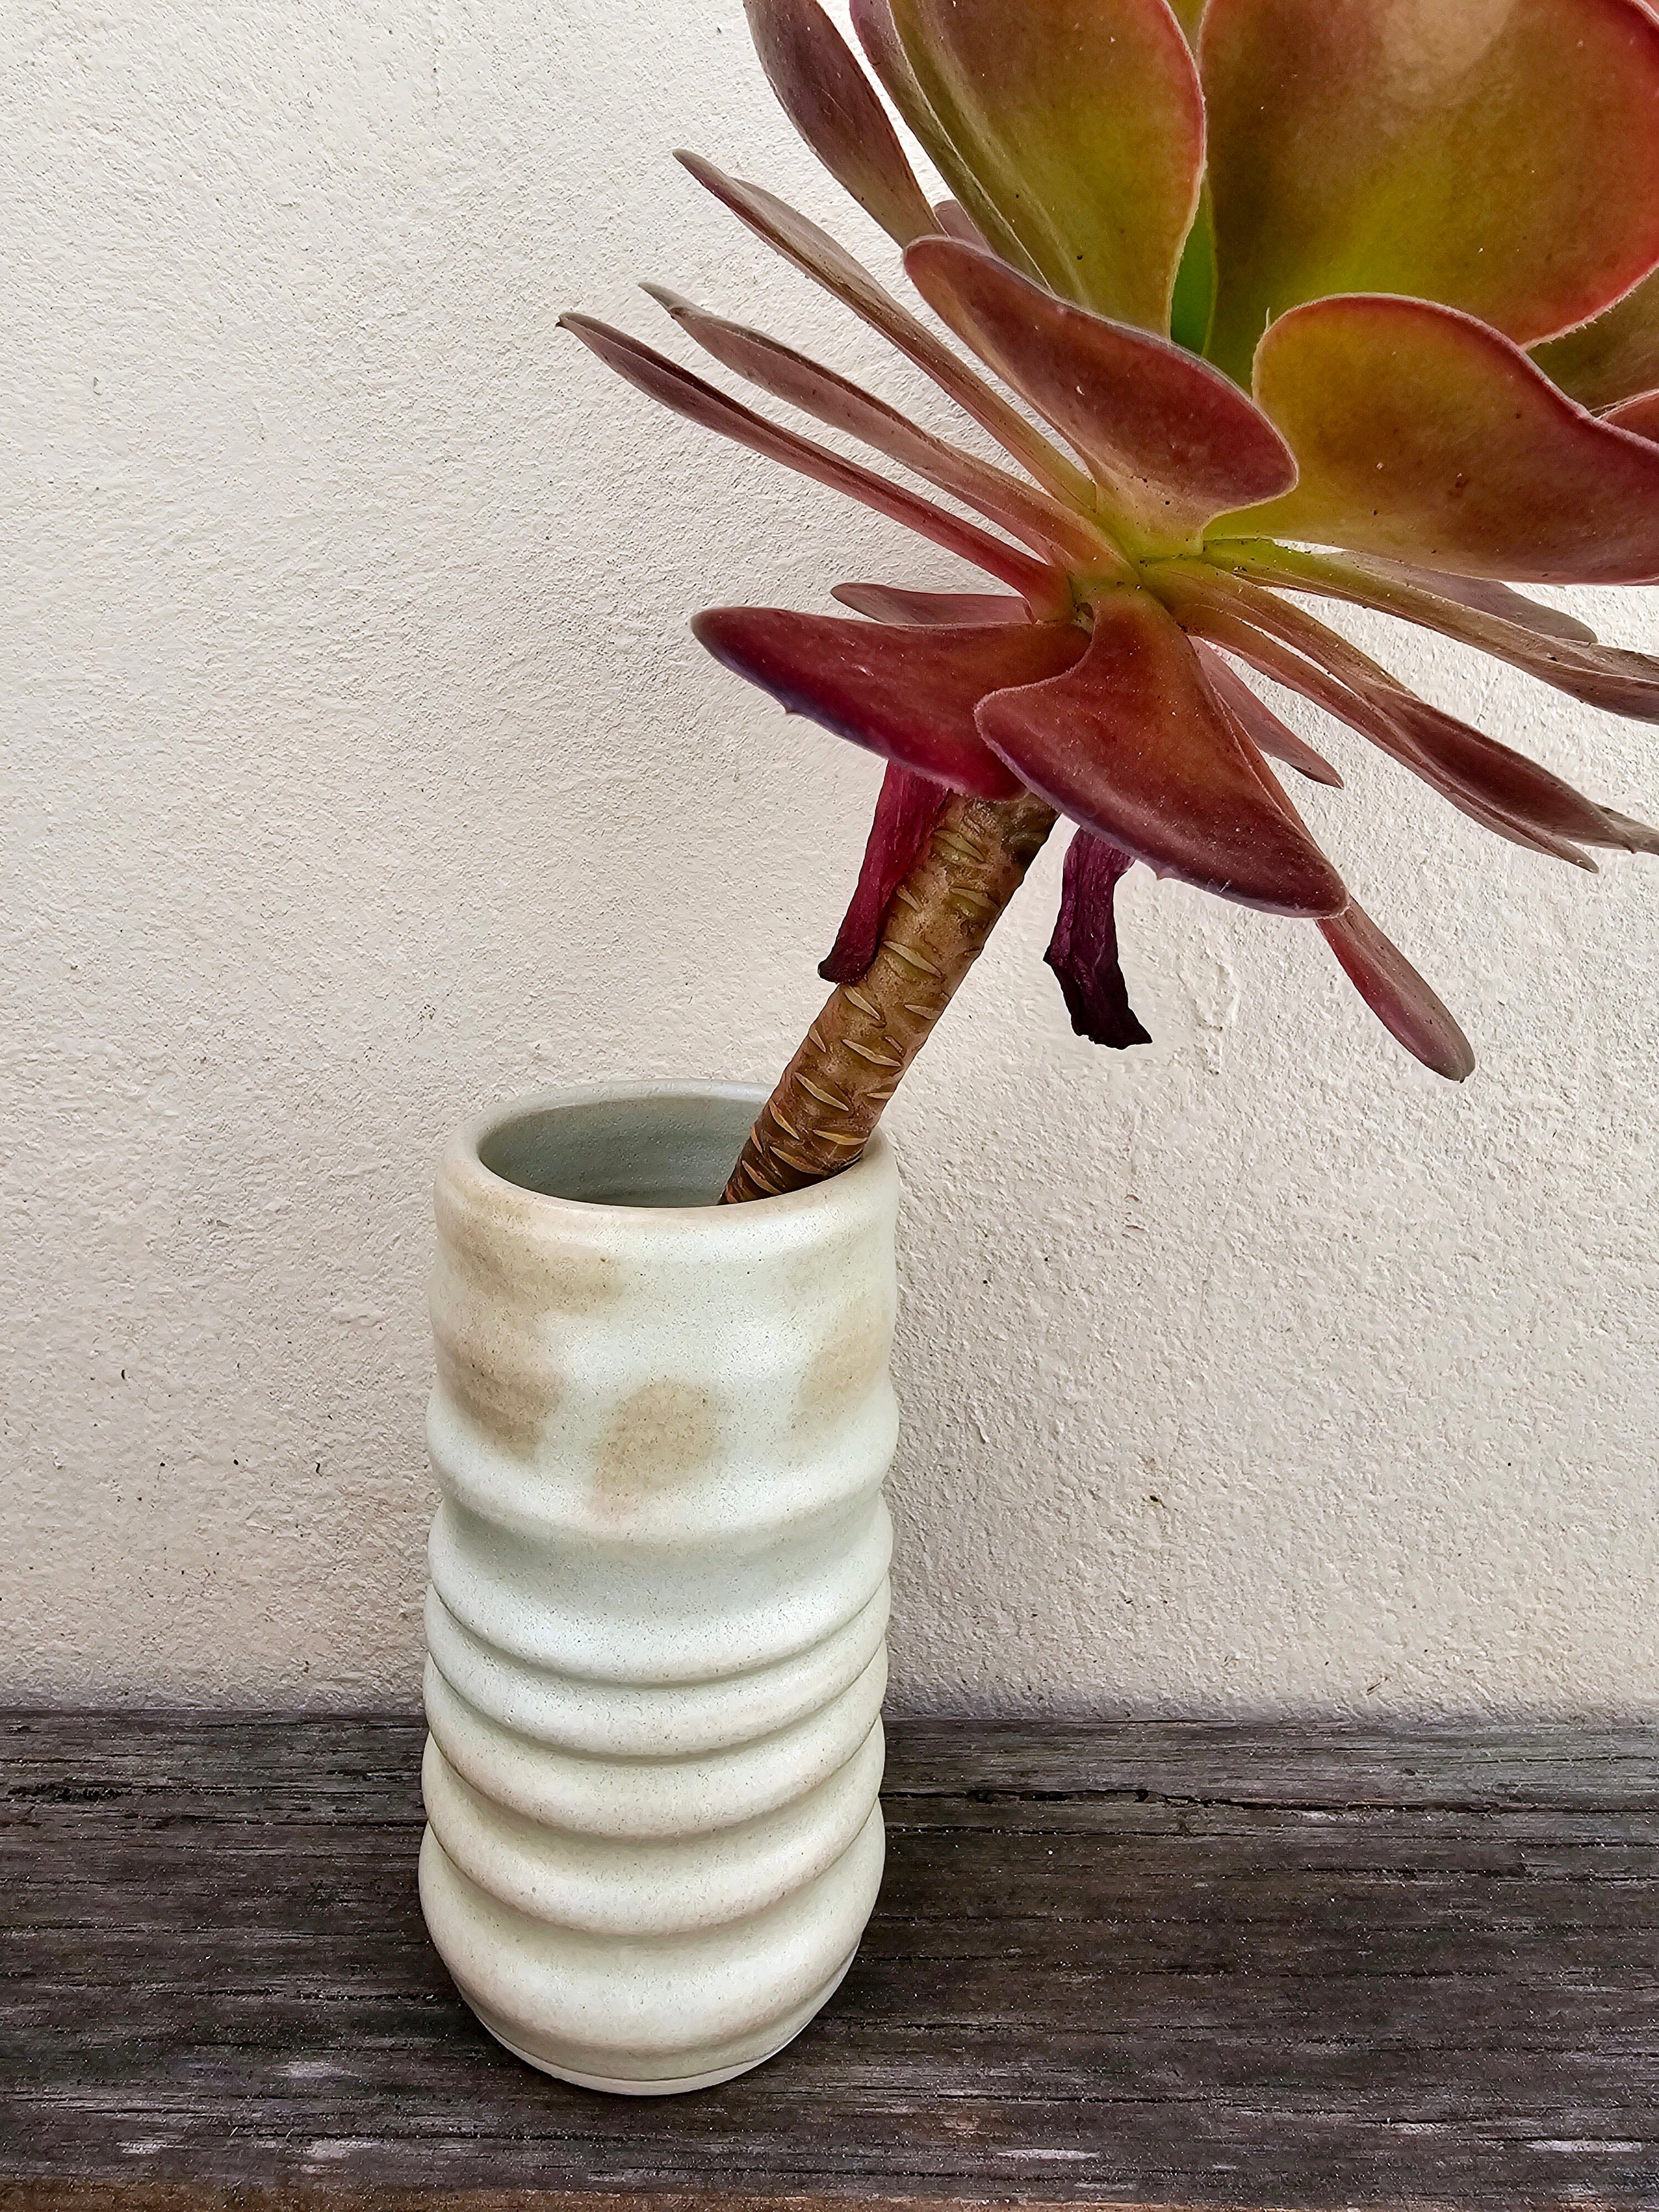 Handmade Ceramic Vases - The Little Mud Room Vase The Little Mud Room Med Sage 110mm 